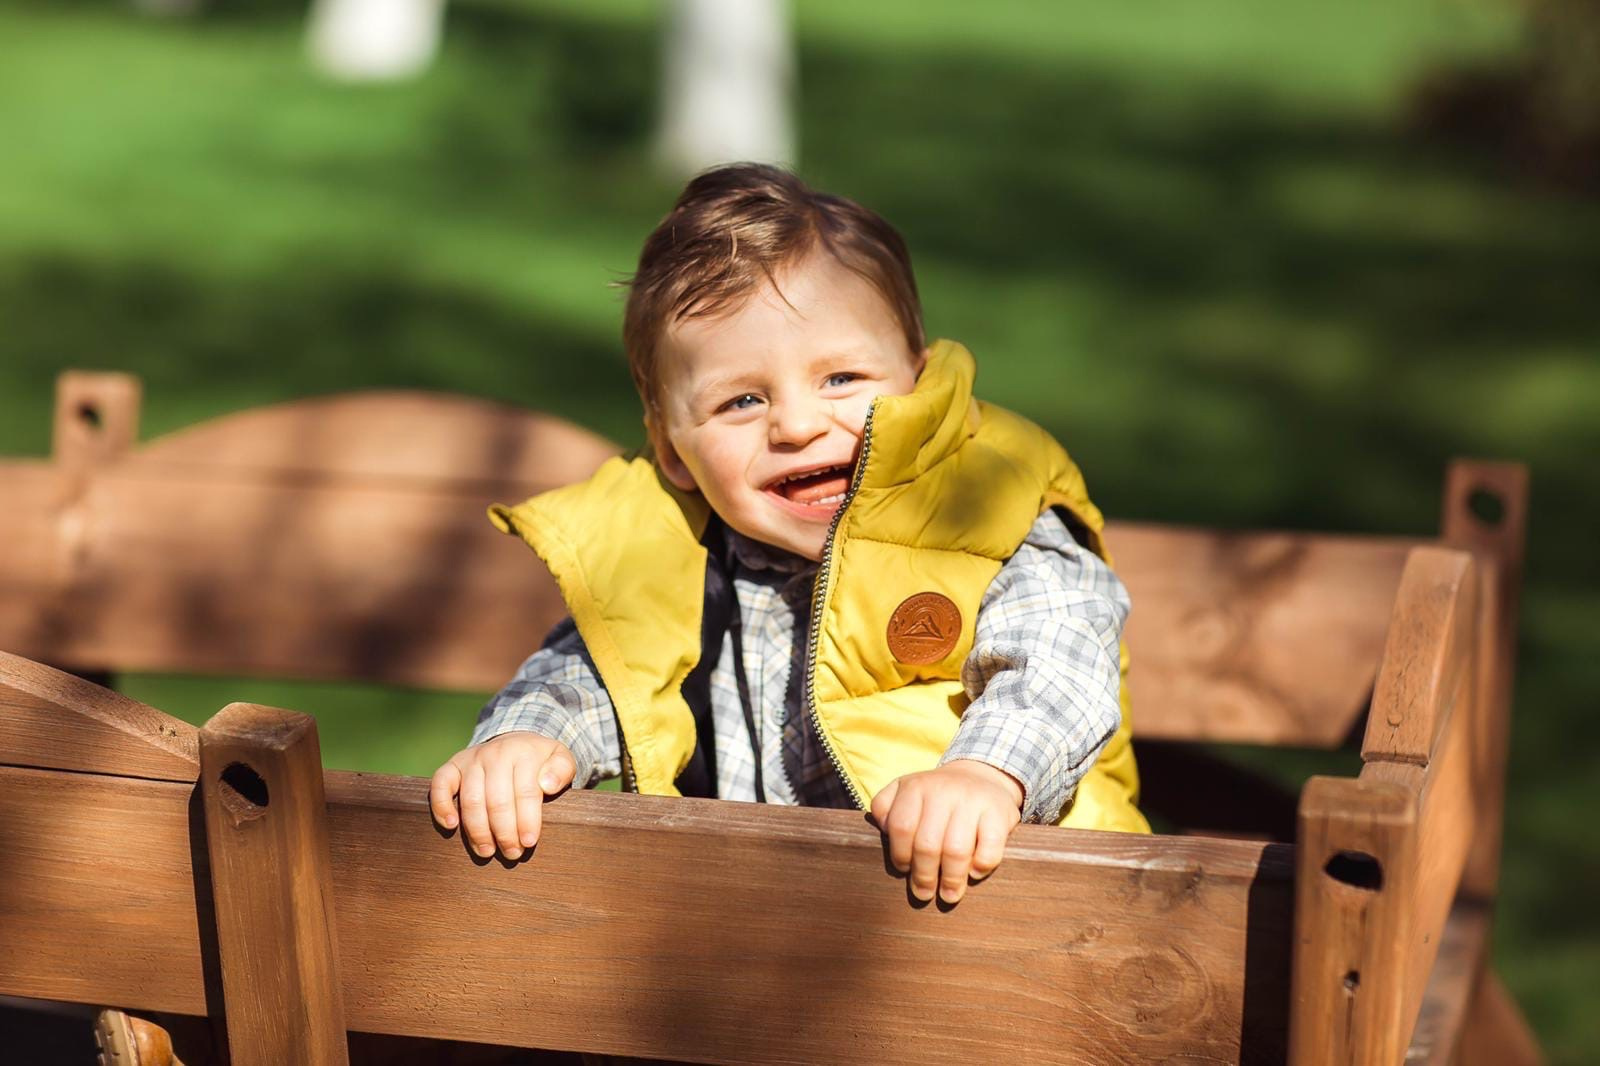 Синдром Ангельмана называют синдромом счастливой куклы — такие дети часто беспричинно улыбаются и смеются